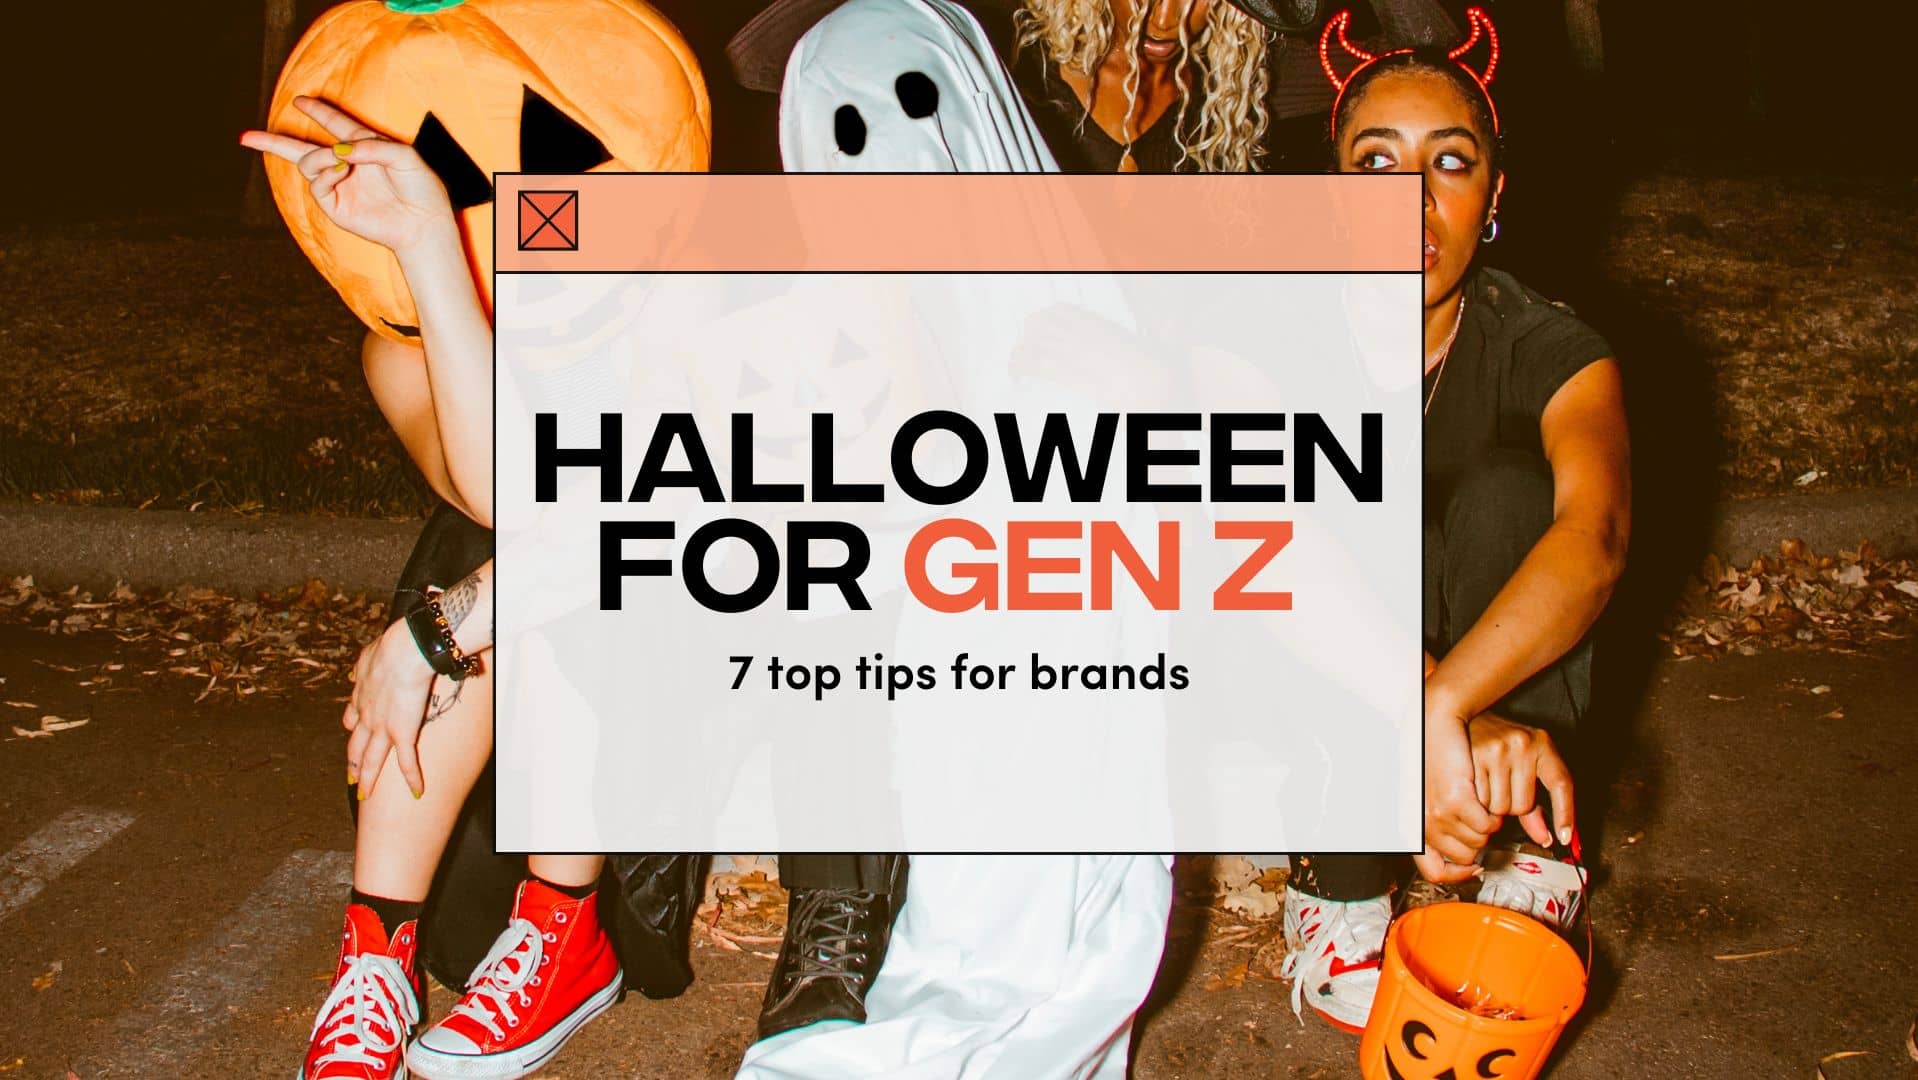 Fanbytes | Gen Z Halloween